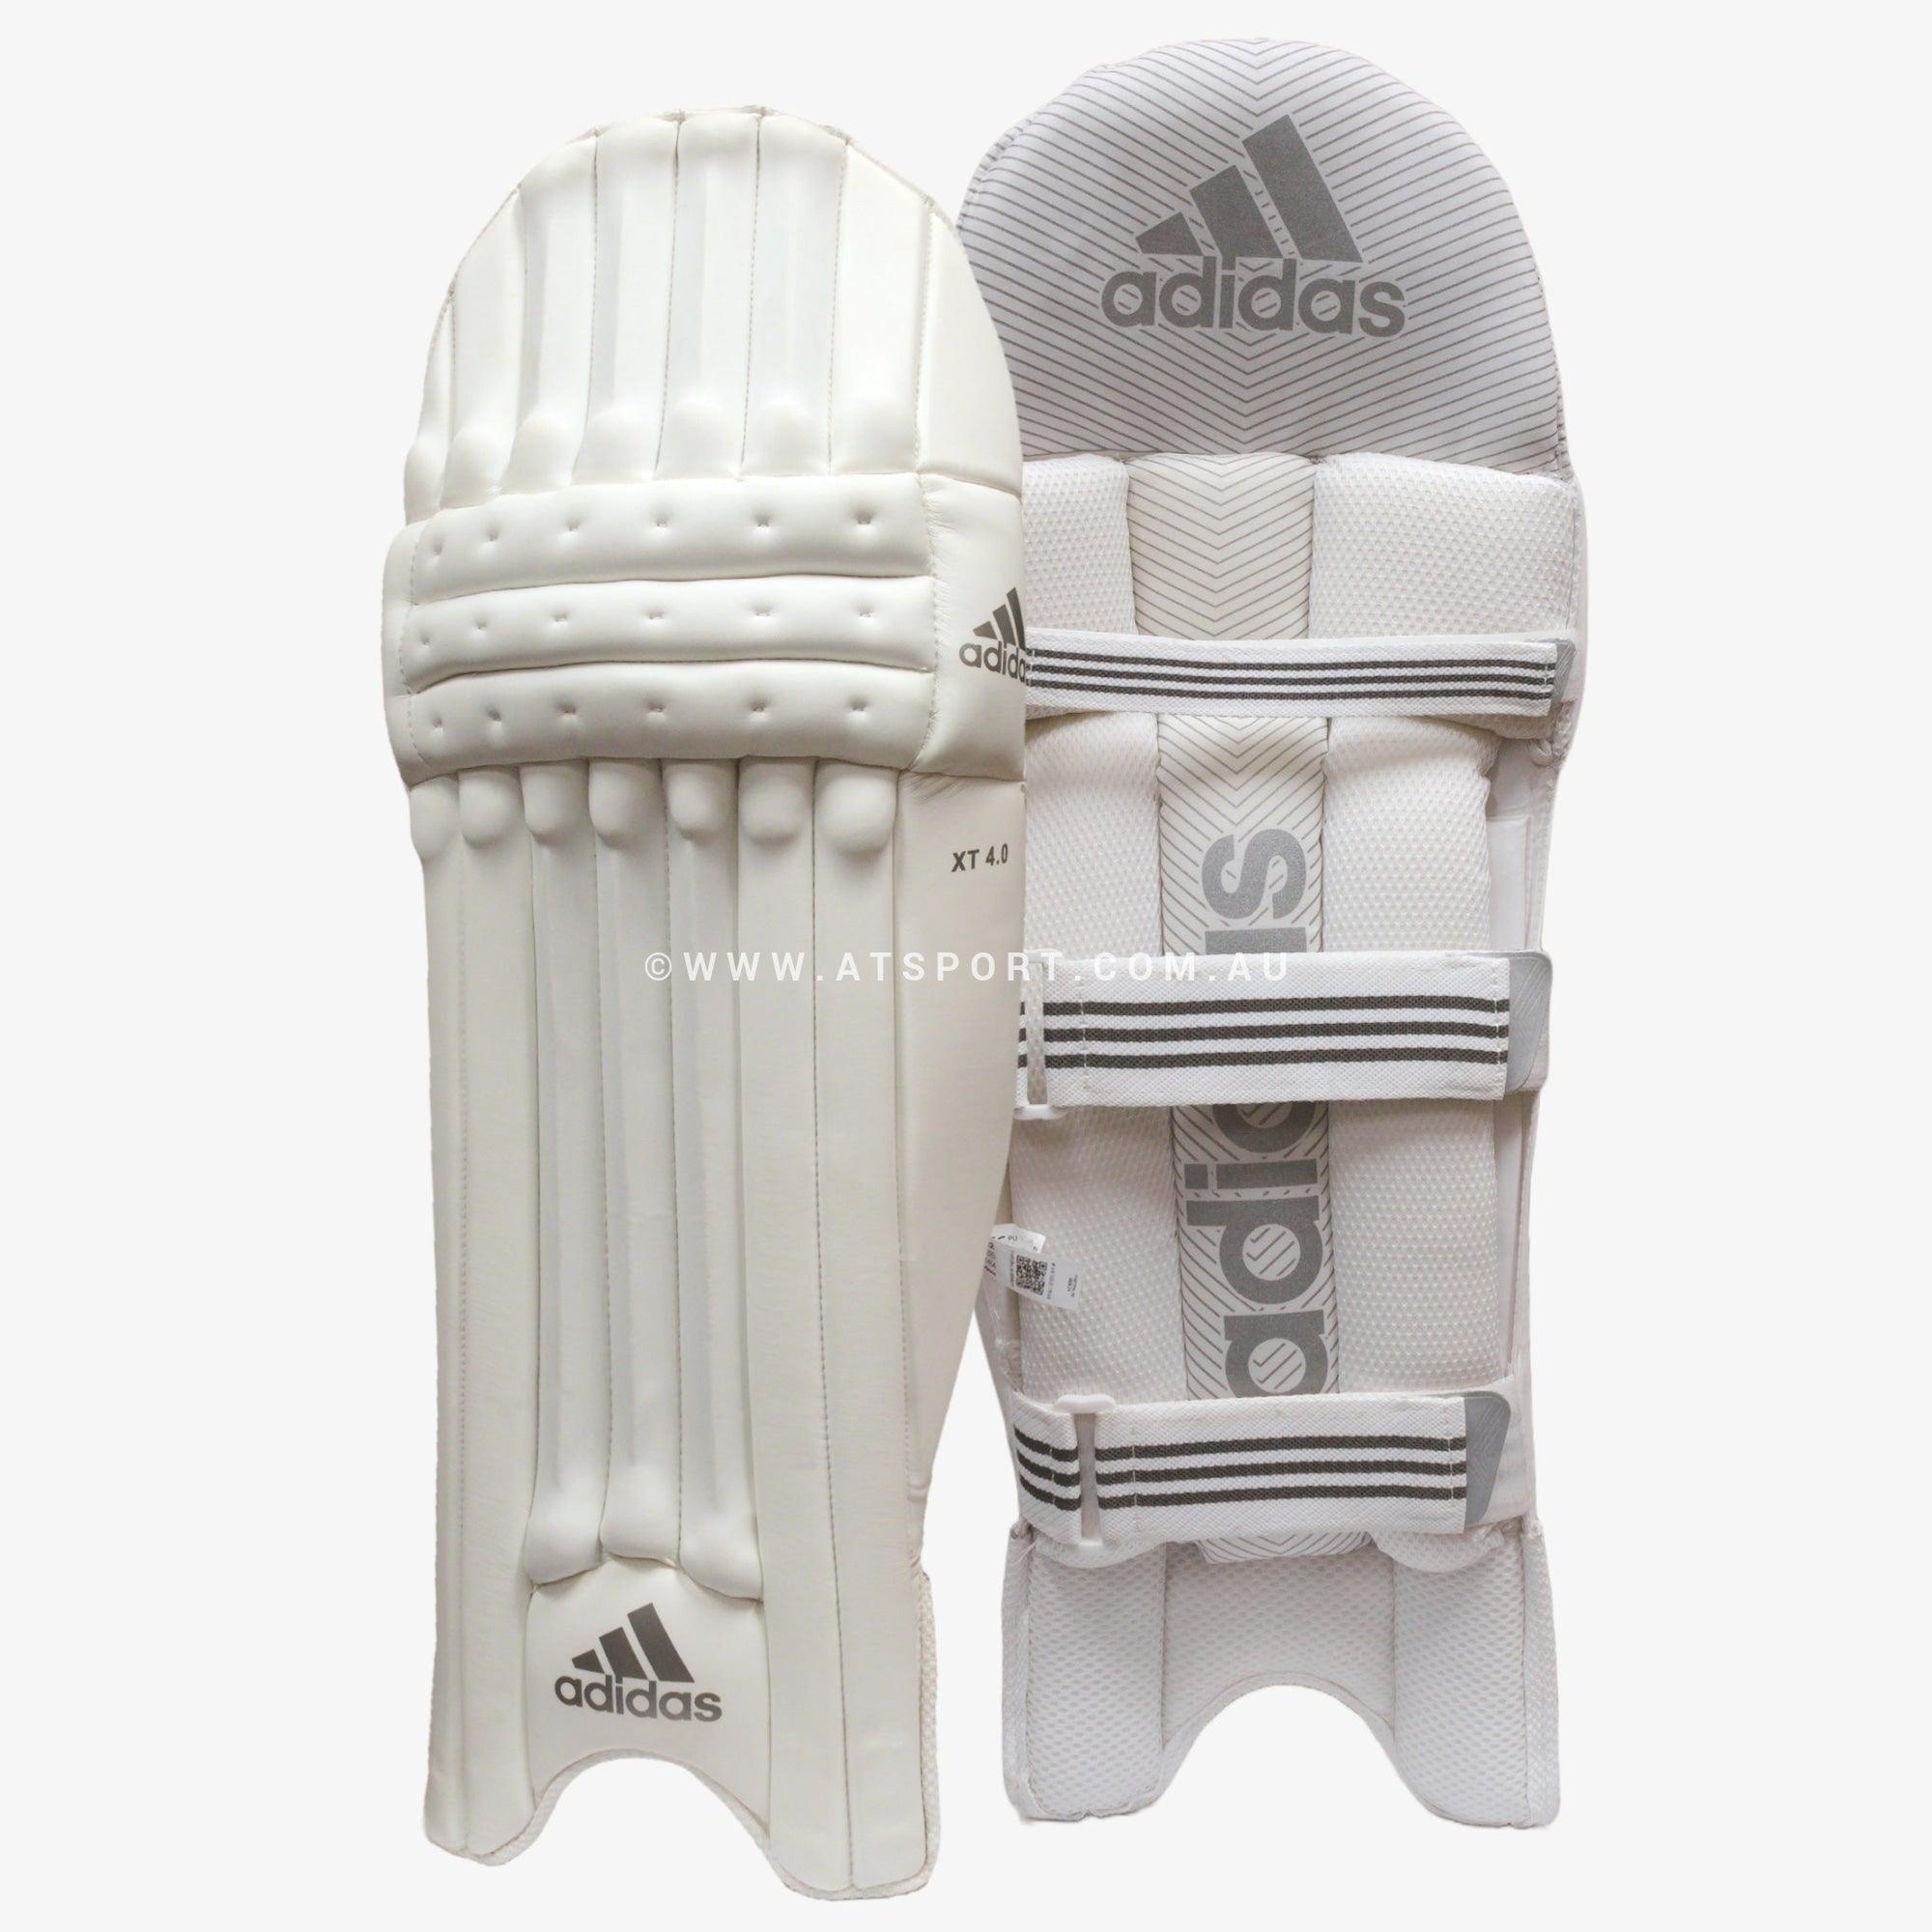 Adidas XT 4.0 Cricket Batting Pads - YOUTH - AT Sports